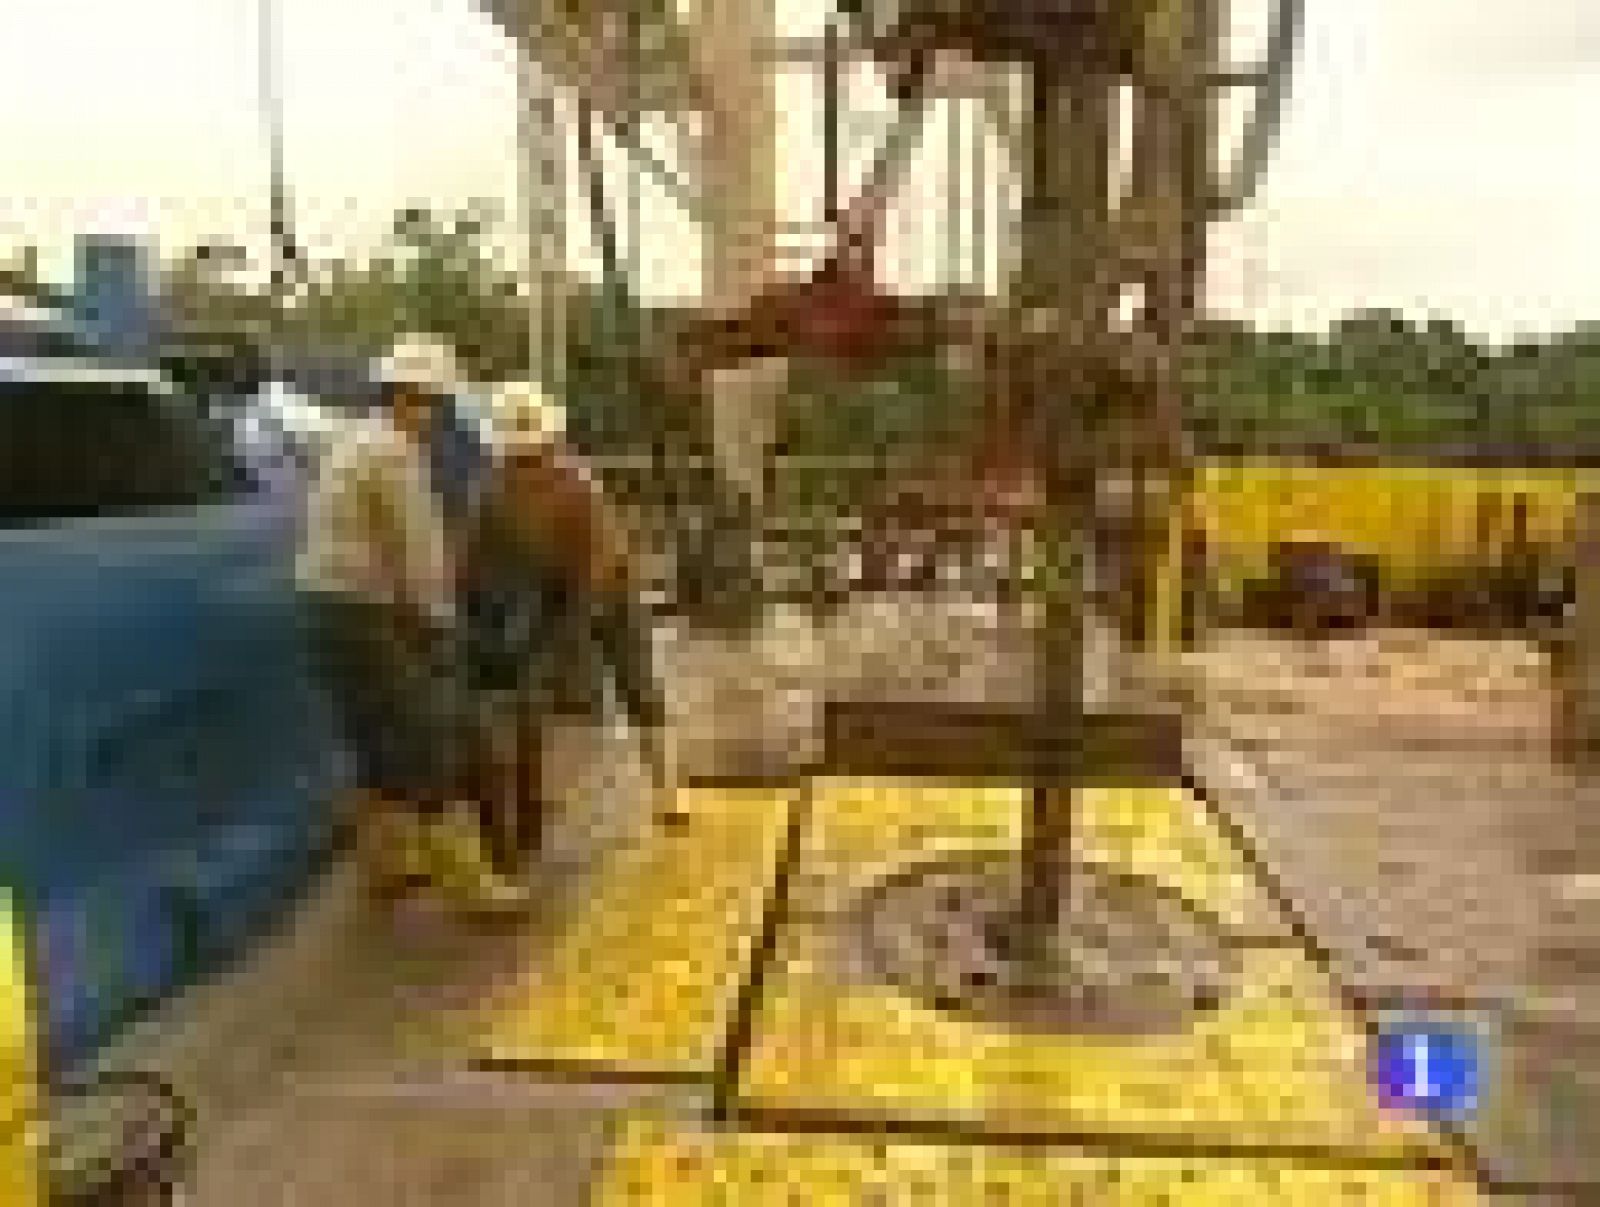 Repsol YPF descubre en Argentina el mayor yacimiento de petróleo y gas de su historia